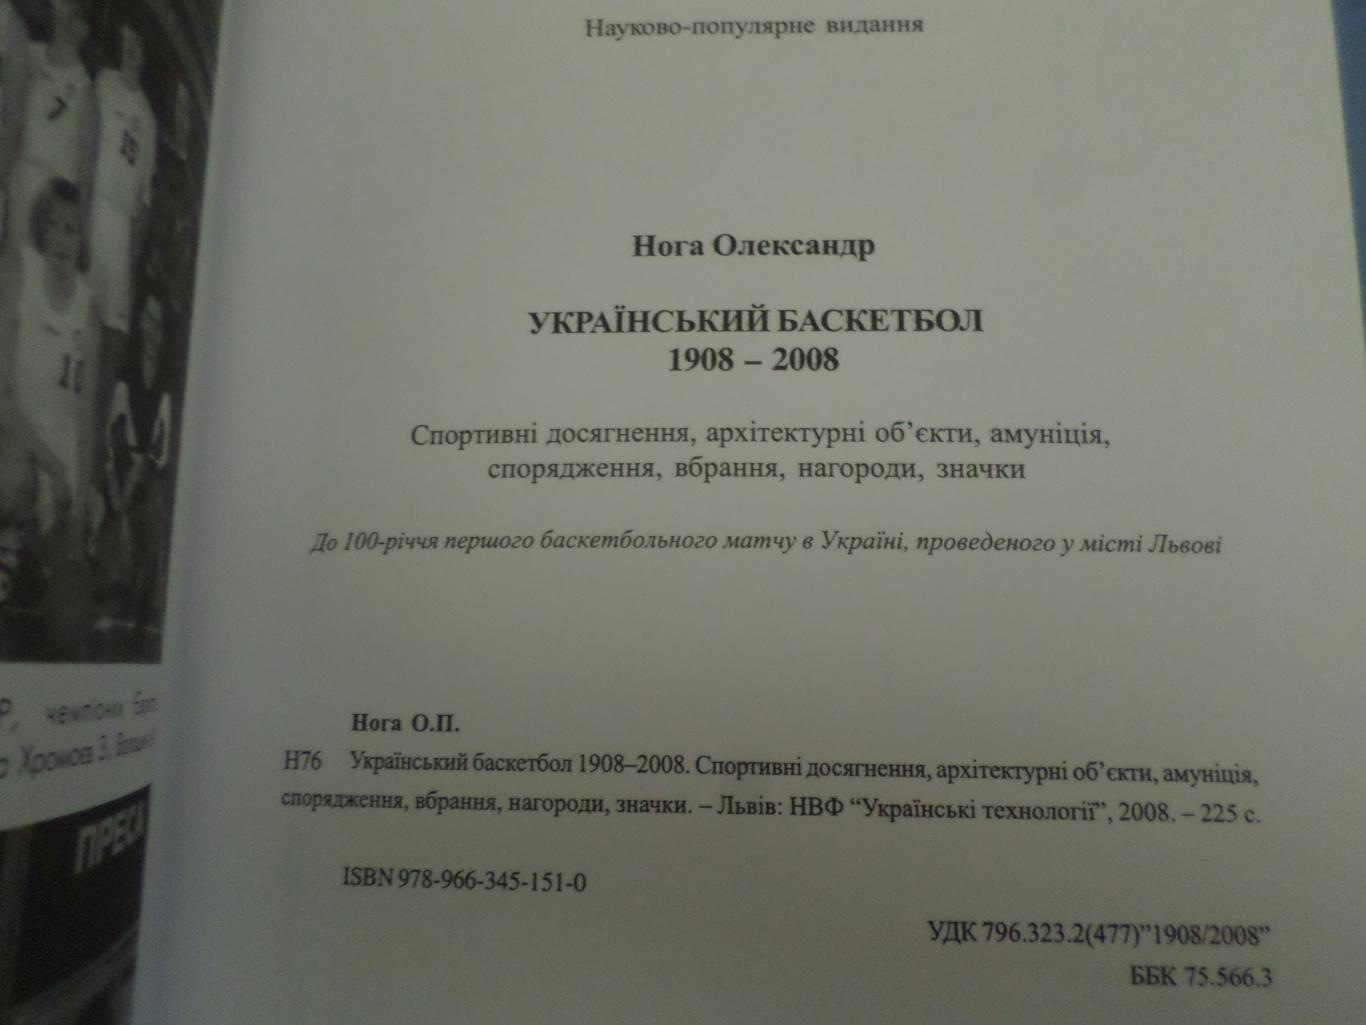 Нога - Украинский баскетбол 1908-2008 гг 3